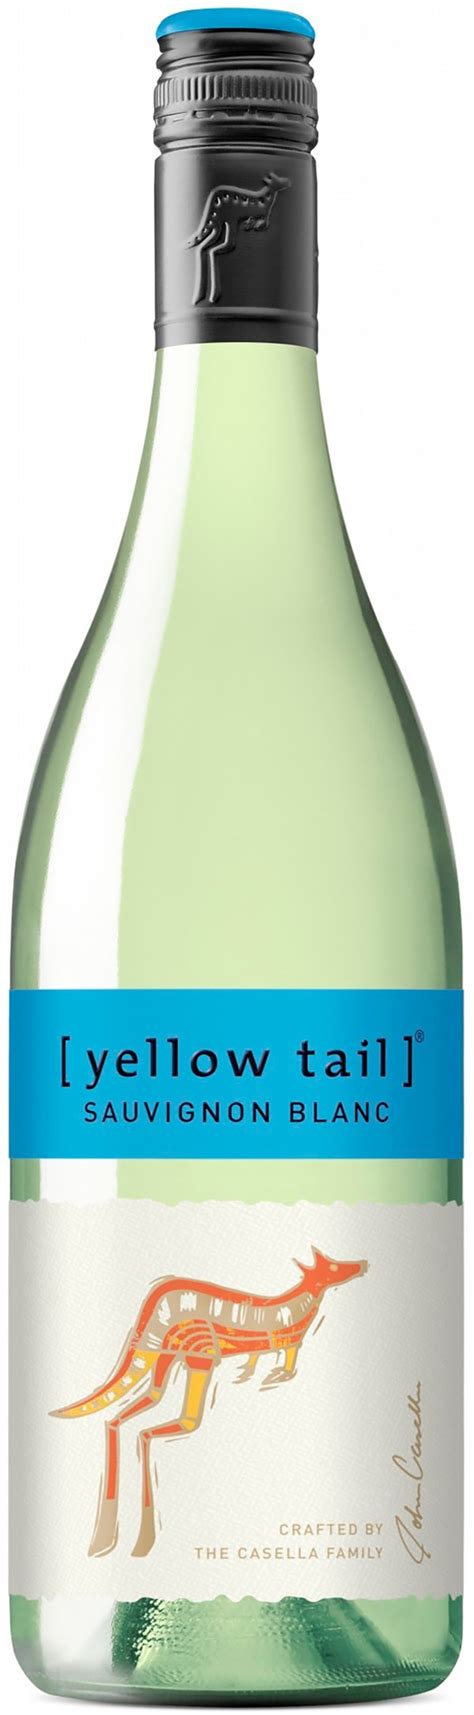 Yellow Tail Sauvignon Blanc 2021 Alko